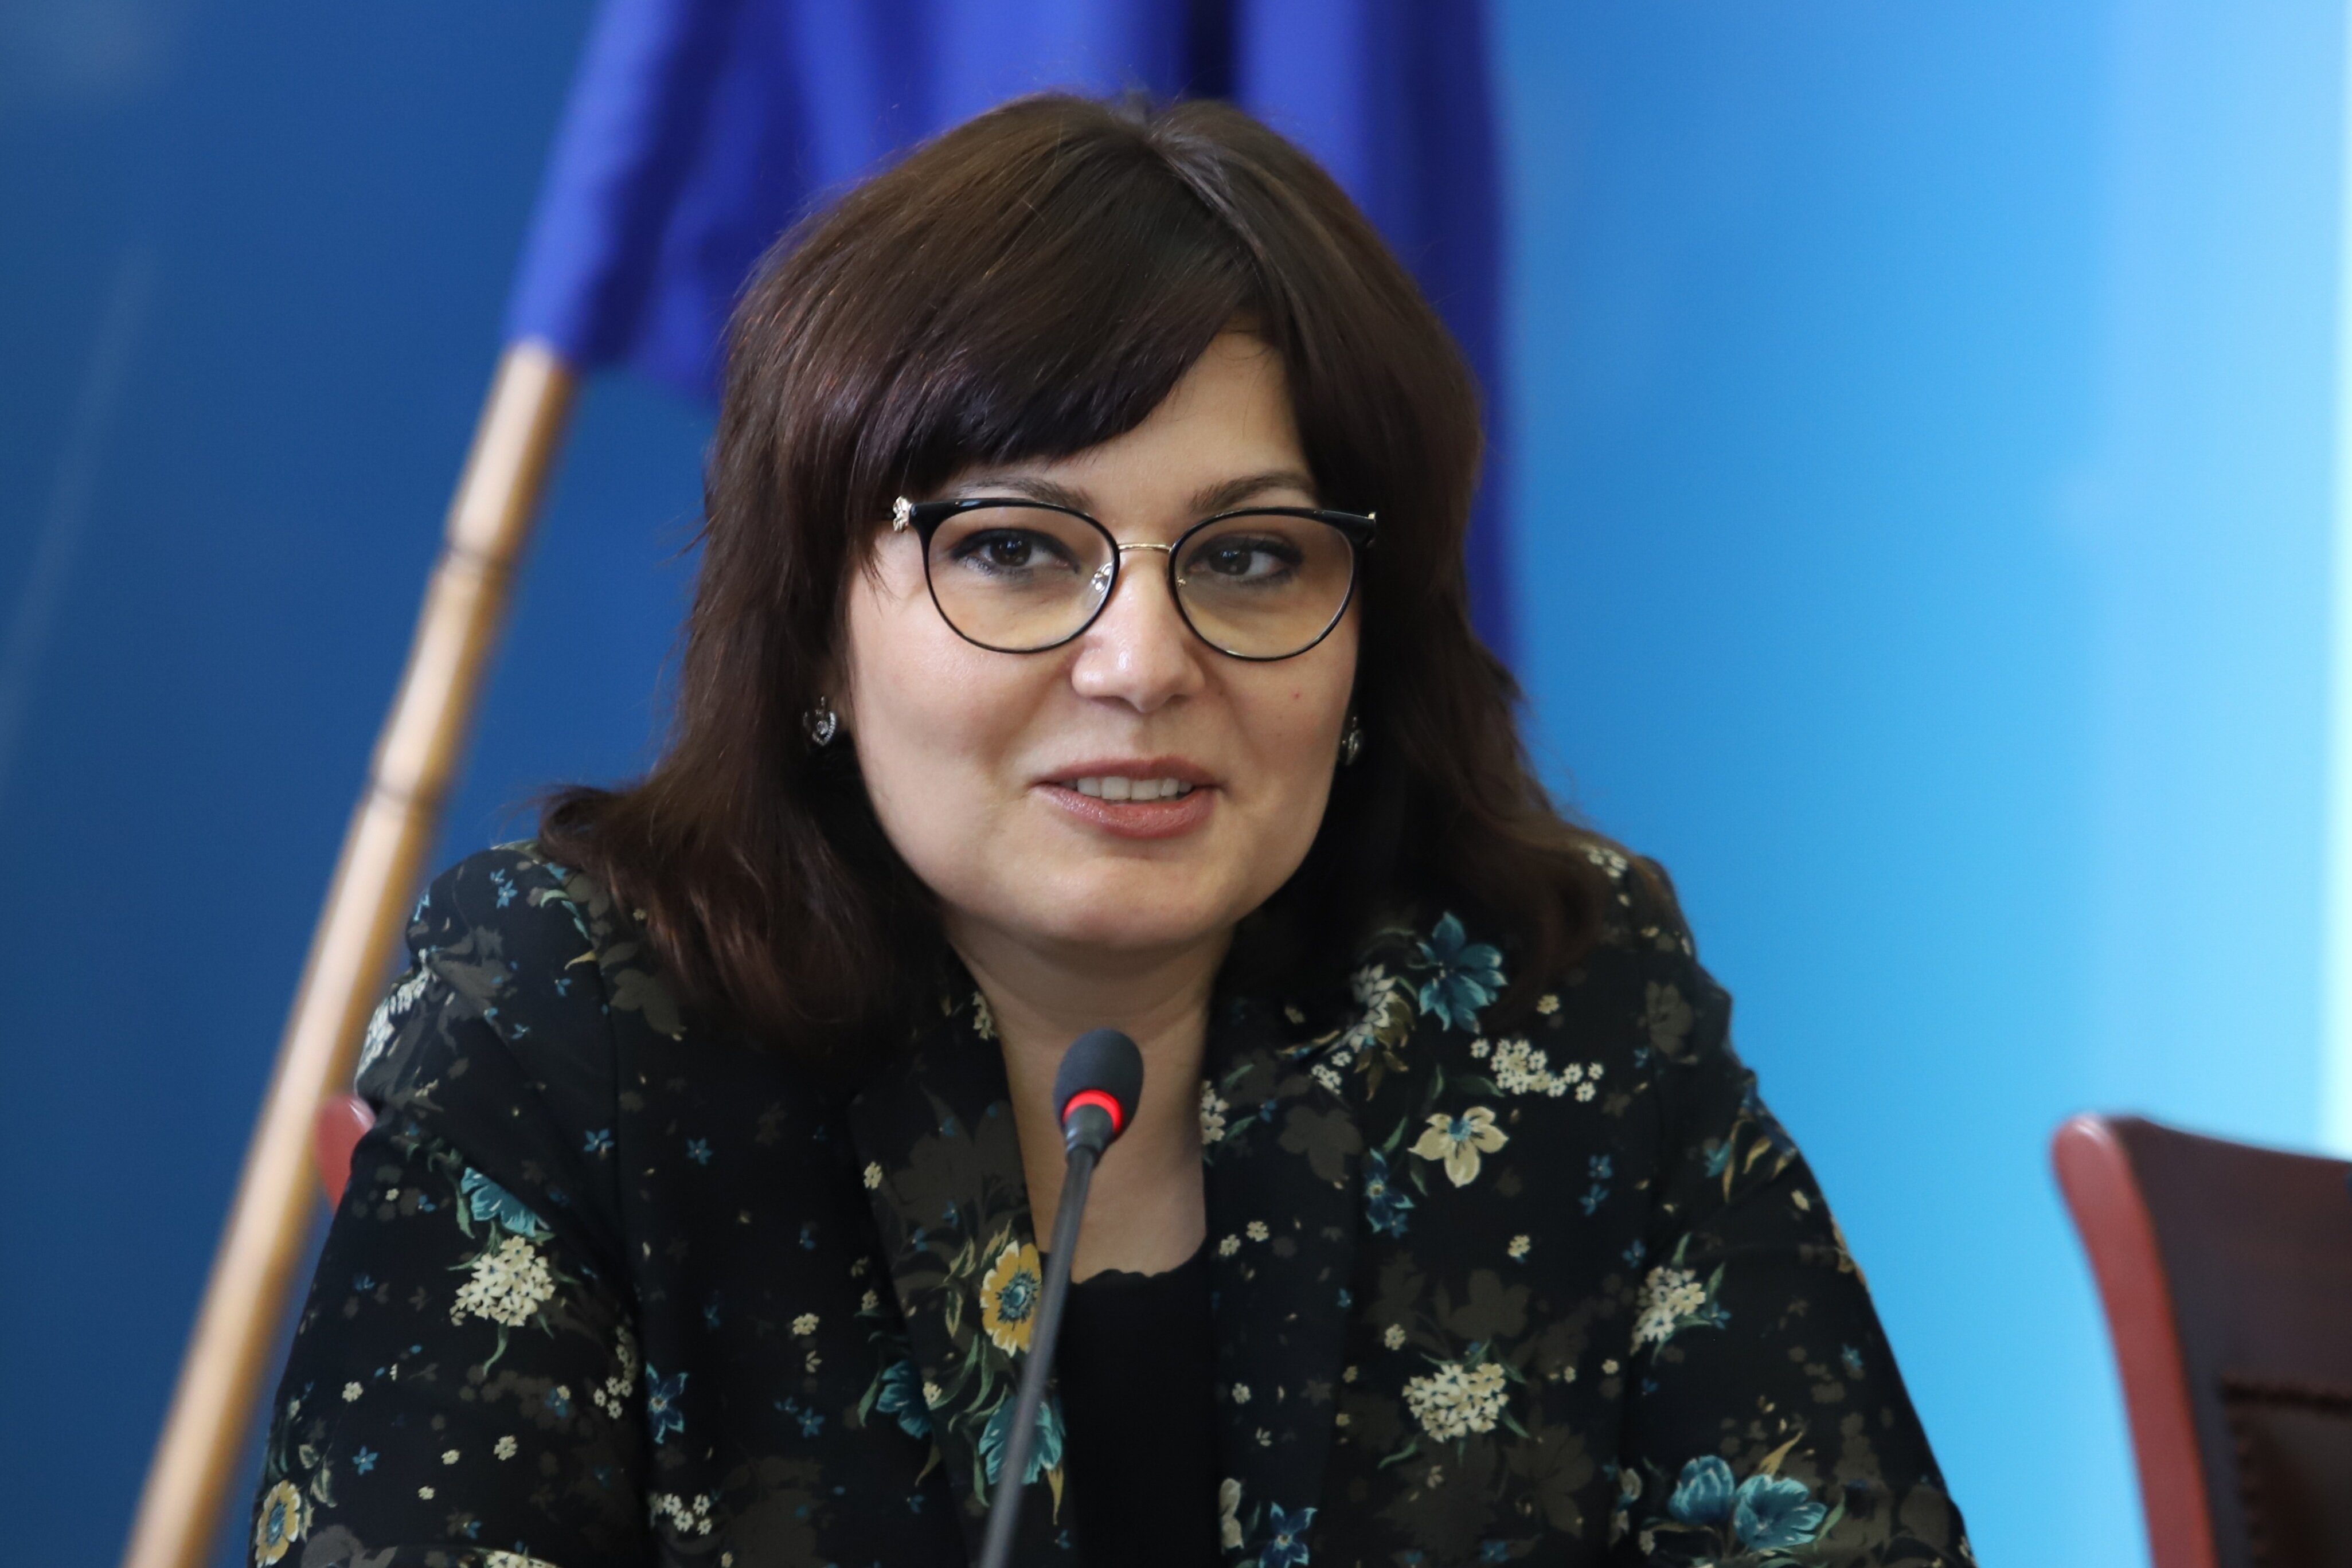 Здравният министър в оставка Асена Сербезова съди прокуратурата за 70